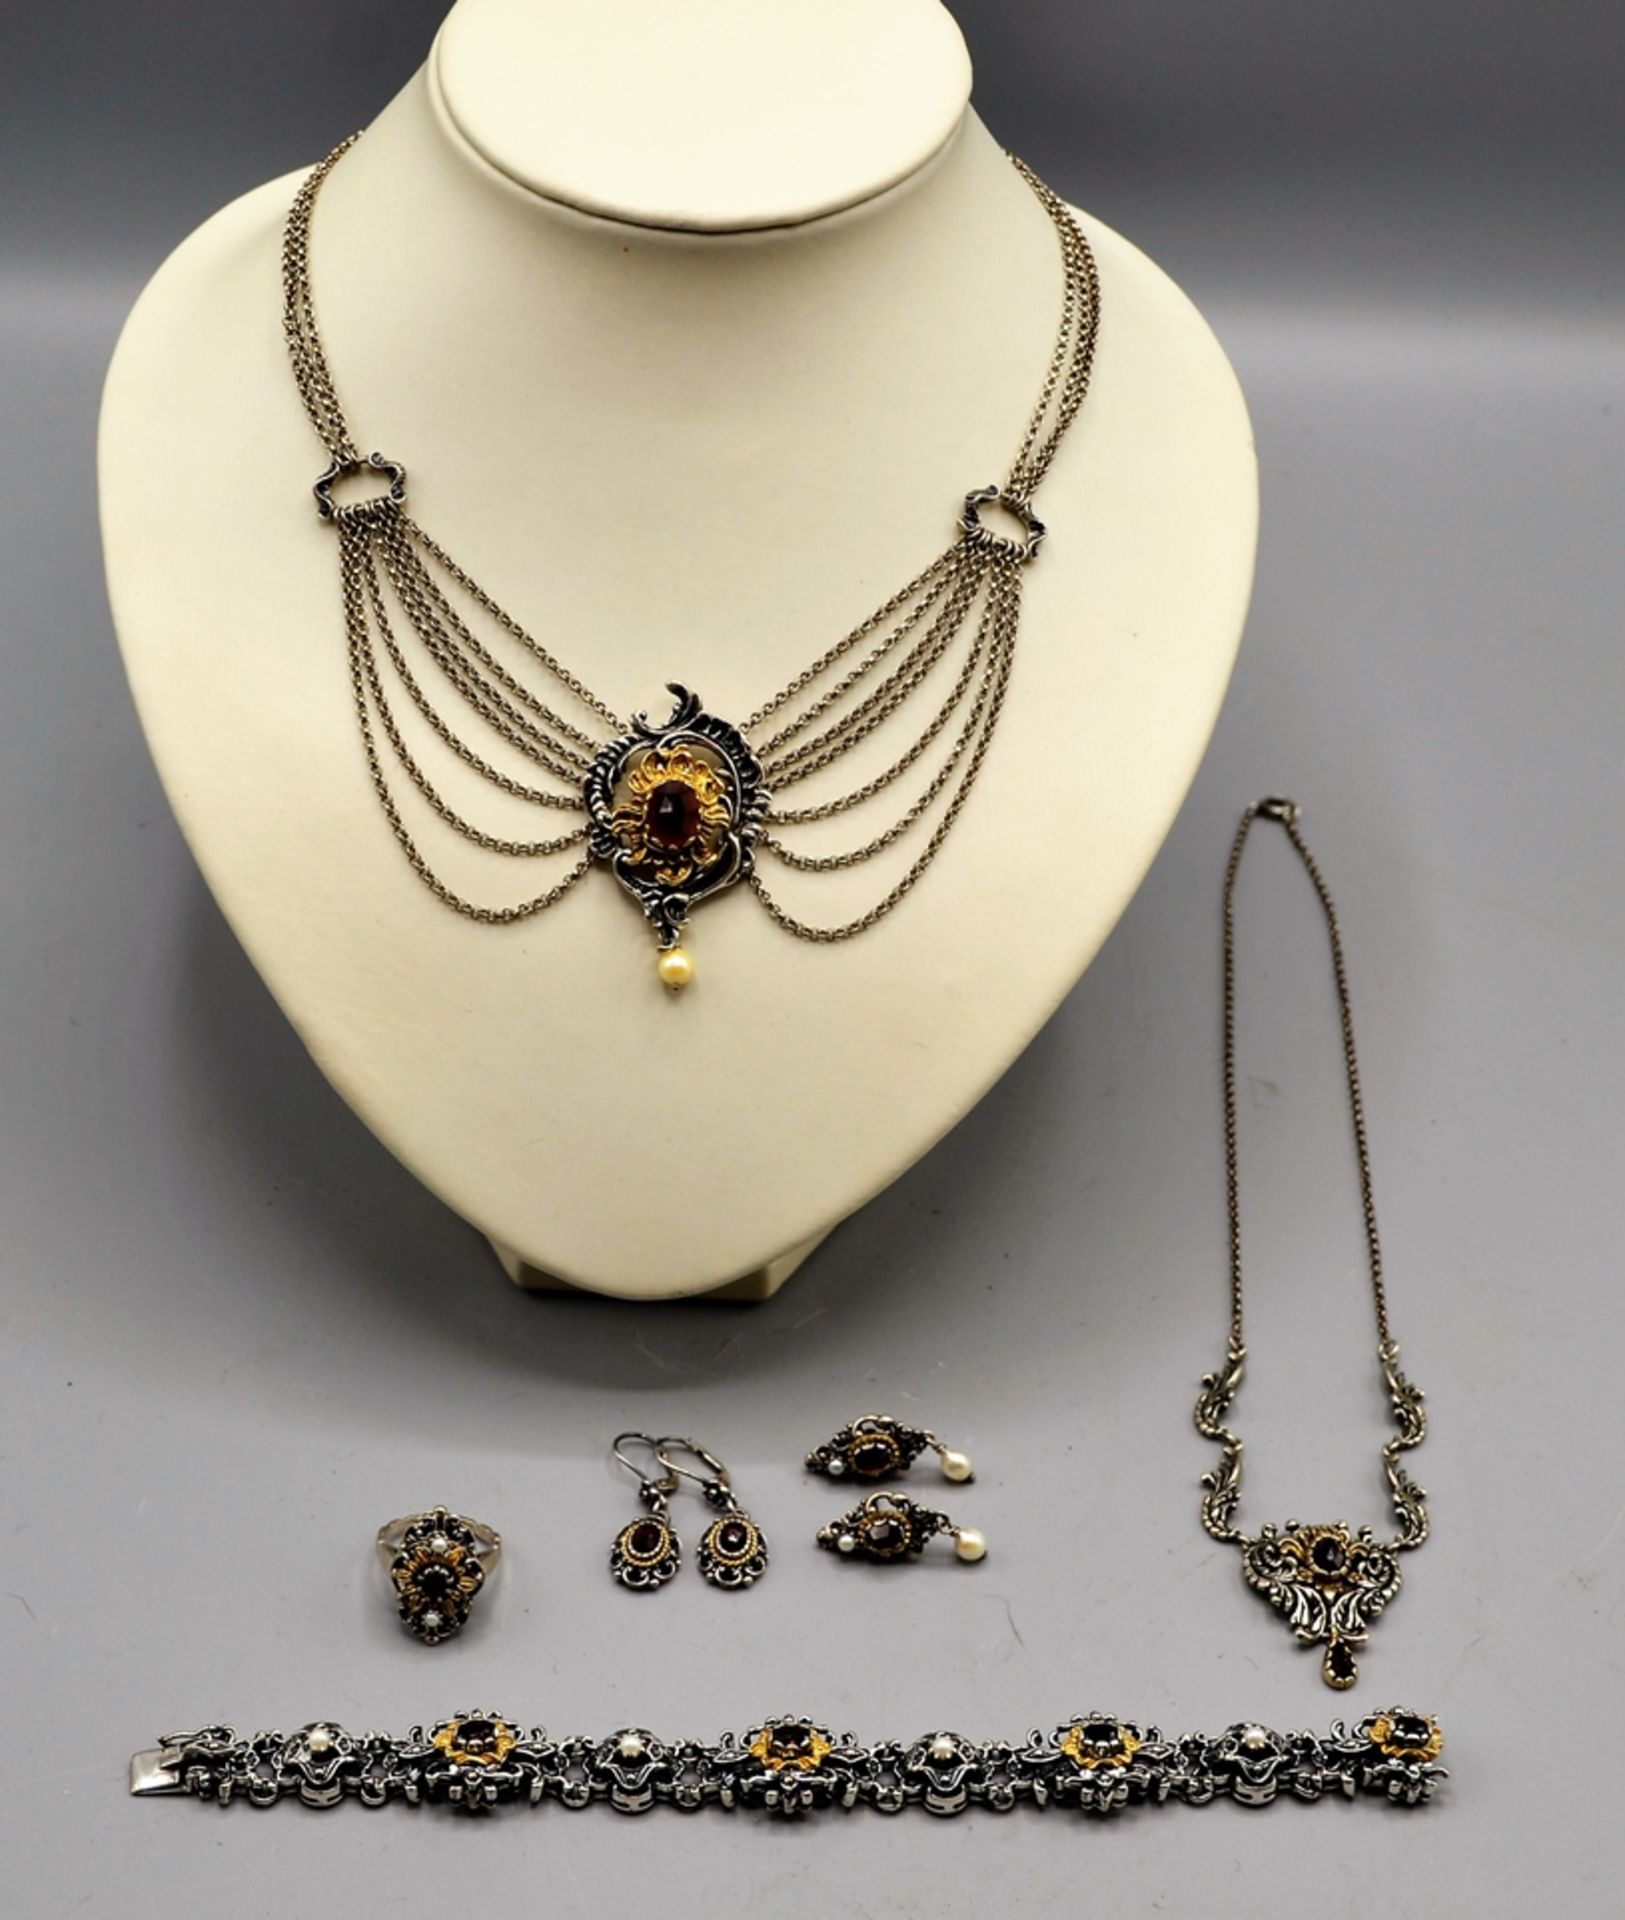 Trachtenschmuck Silberschmuck Set Granat Perlen 6-teilig, 2 Collier, 1 Armband, 1 Ring, Ohrstecker